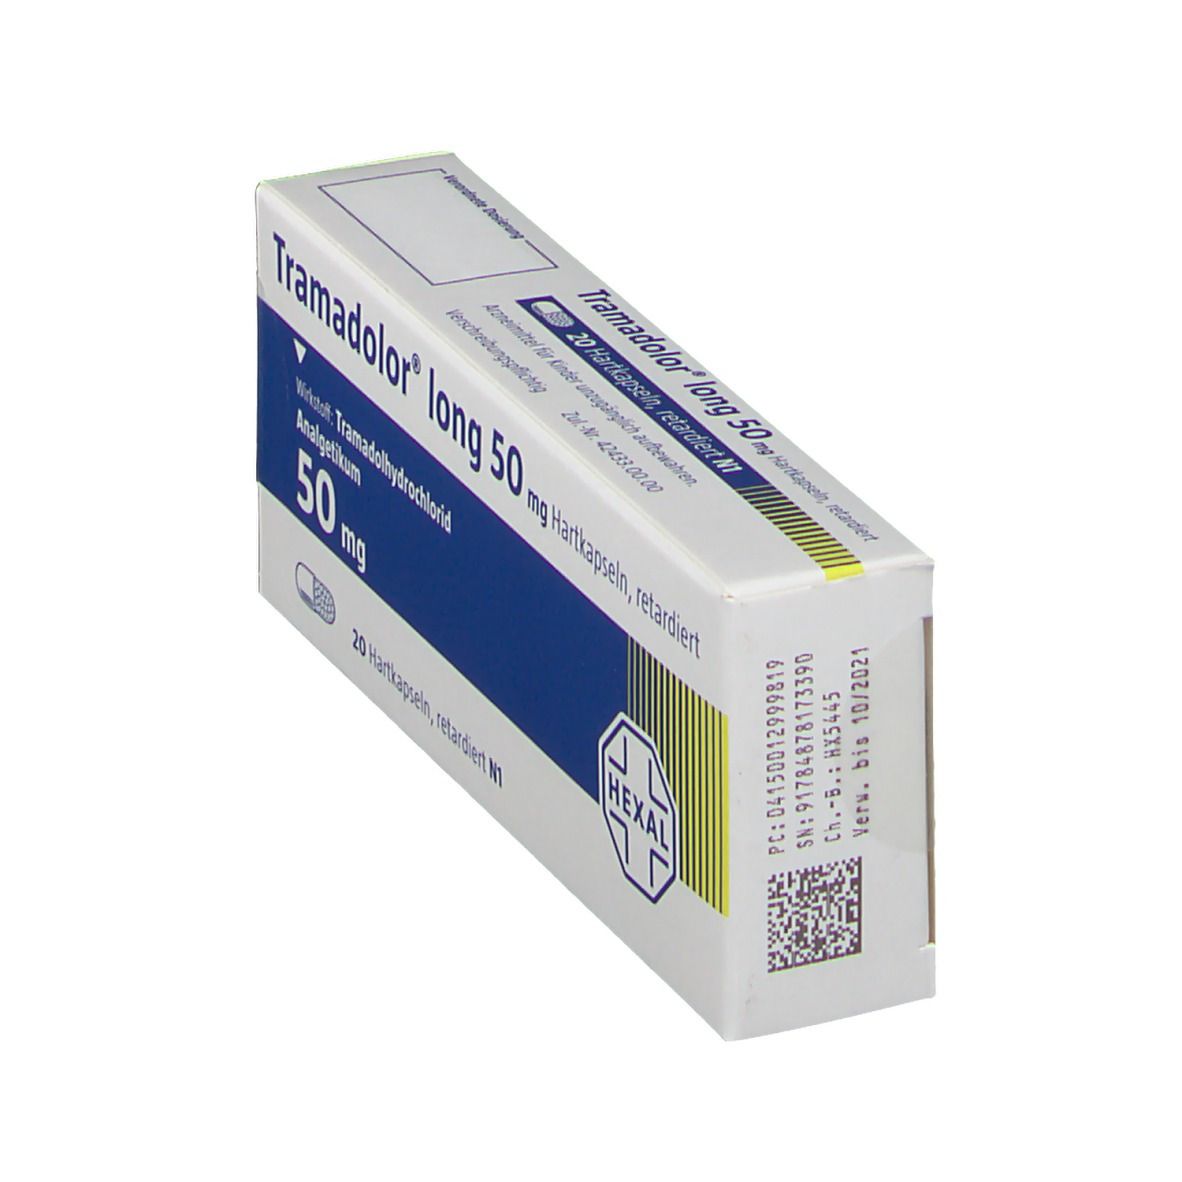 Tramadolor® long 50 mg Hartkapseln retardiert